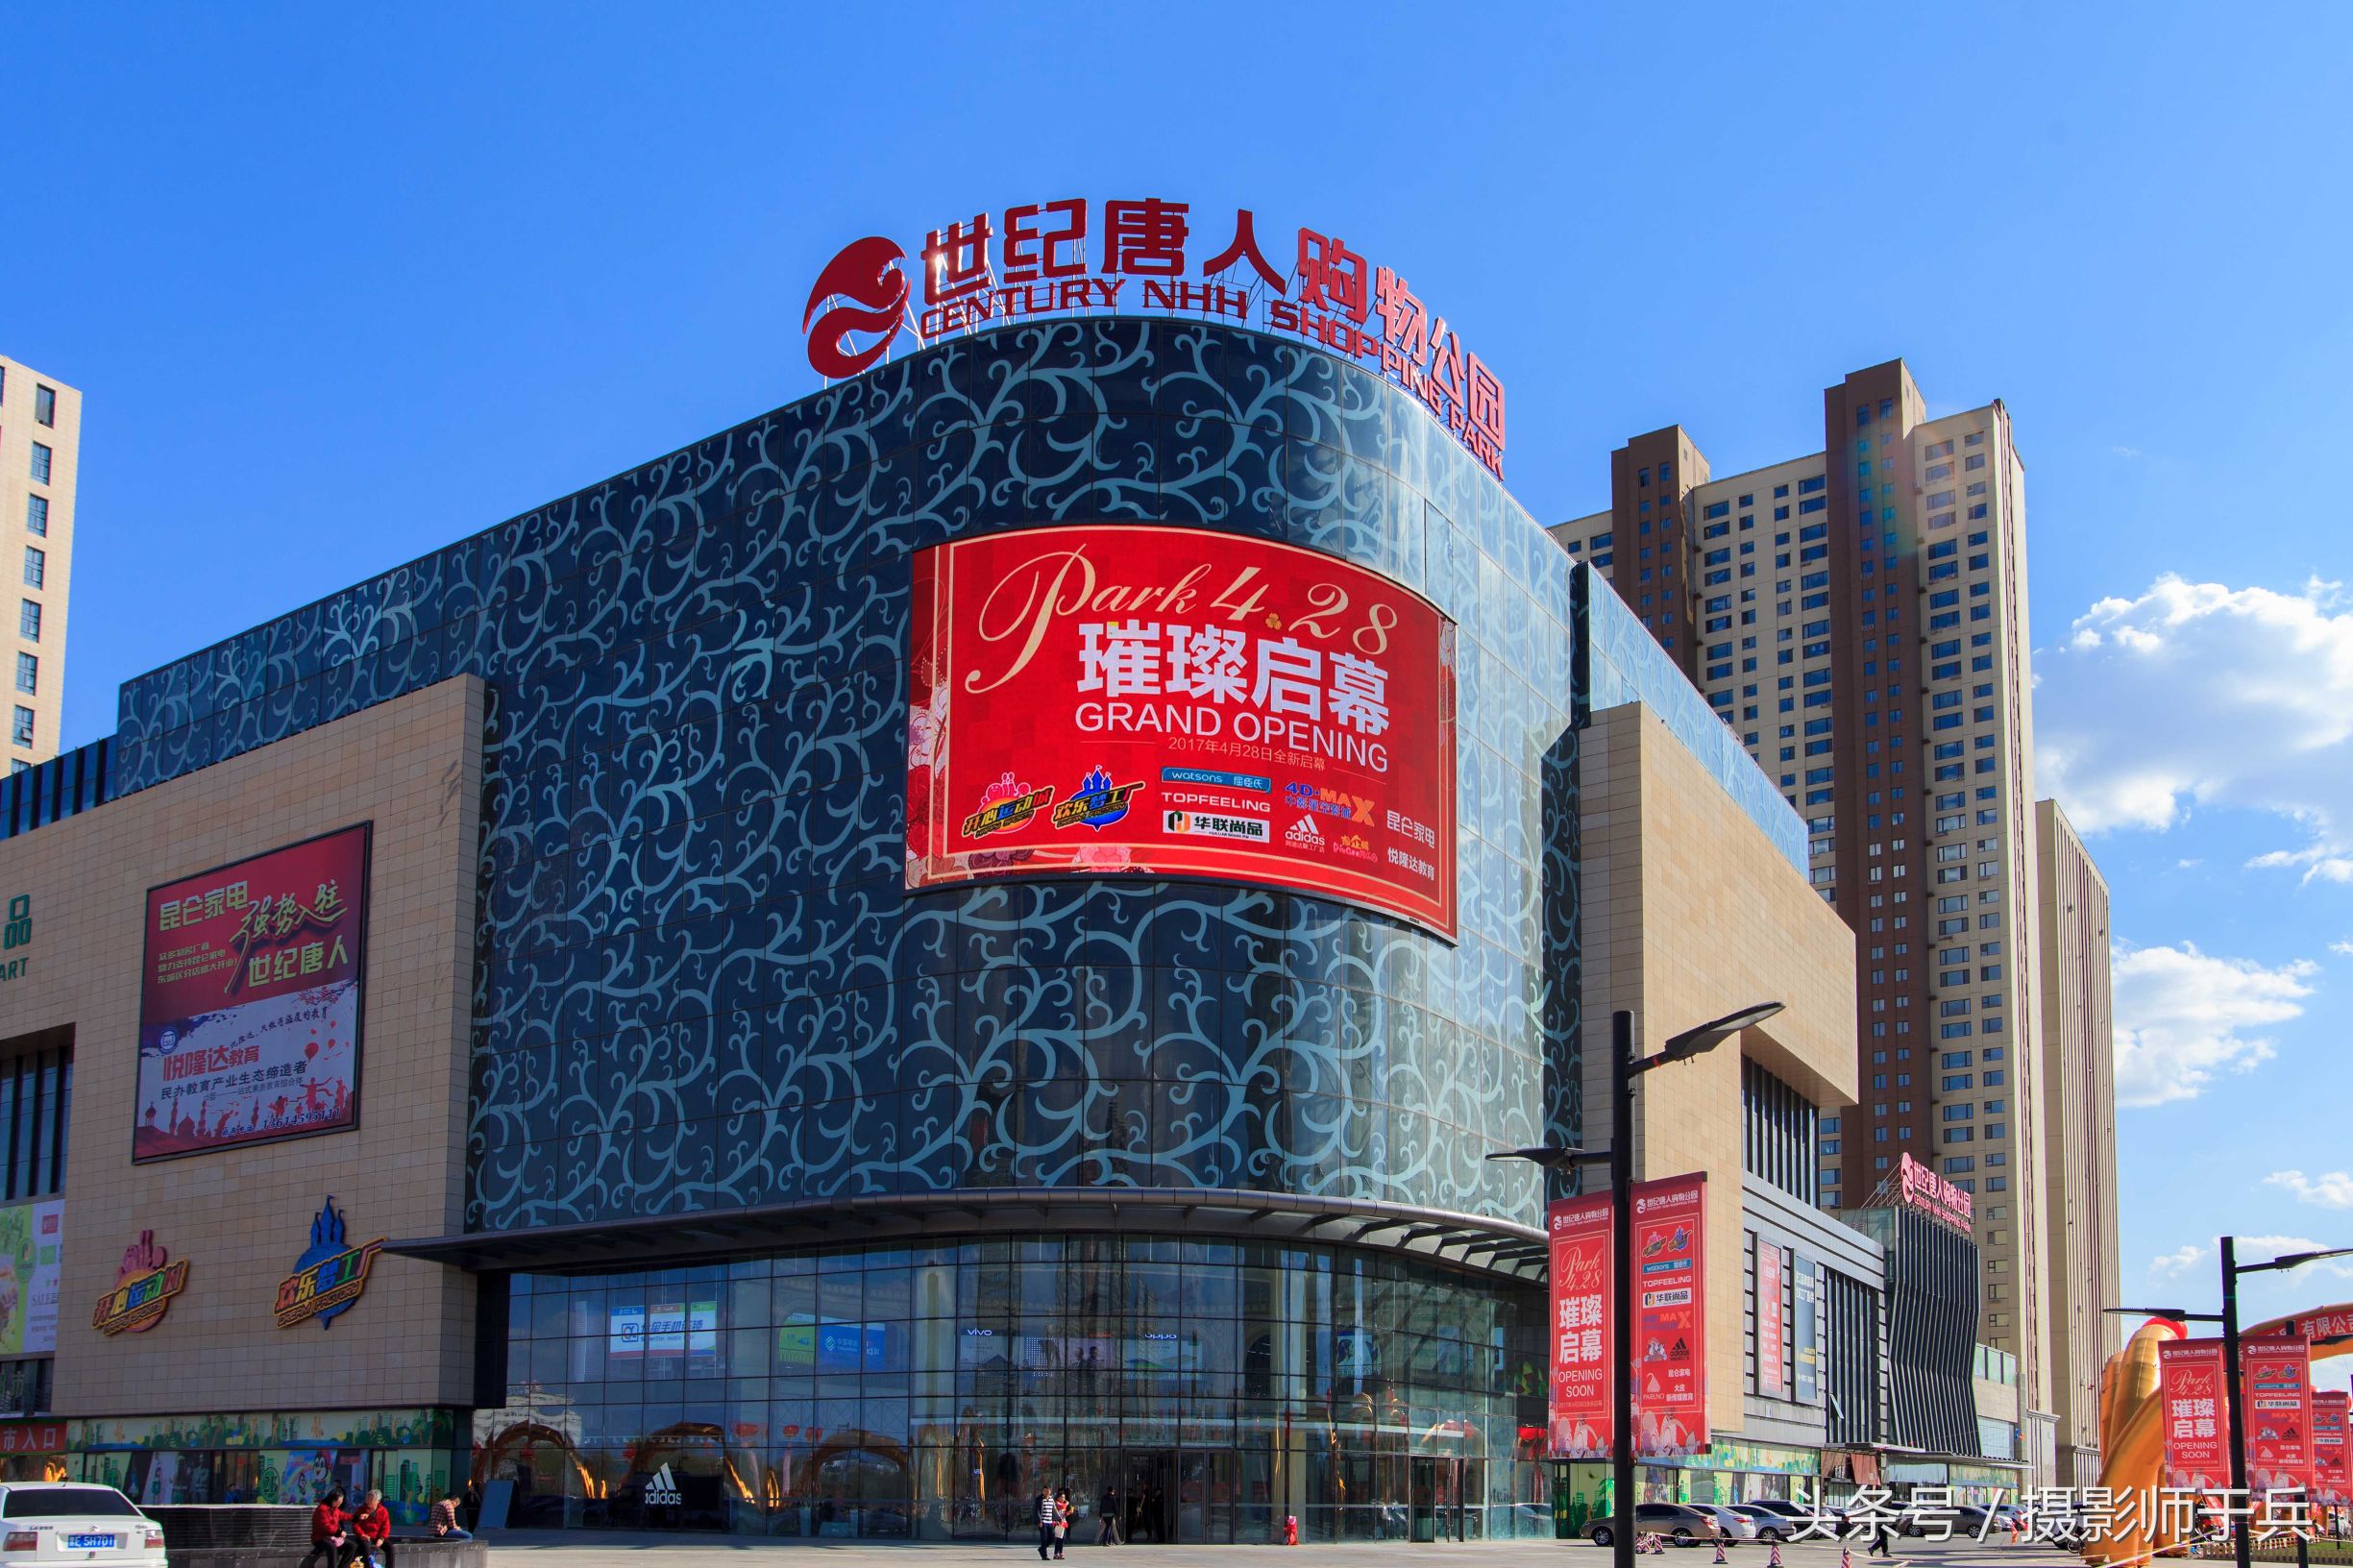 号称“全情景式-主题购物公园”的大庆世纪唐人购物公园开业了